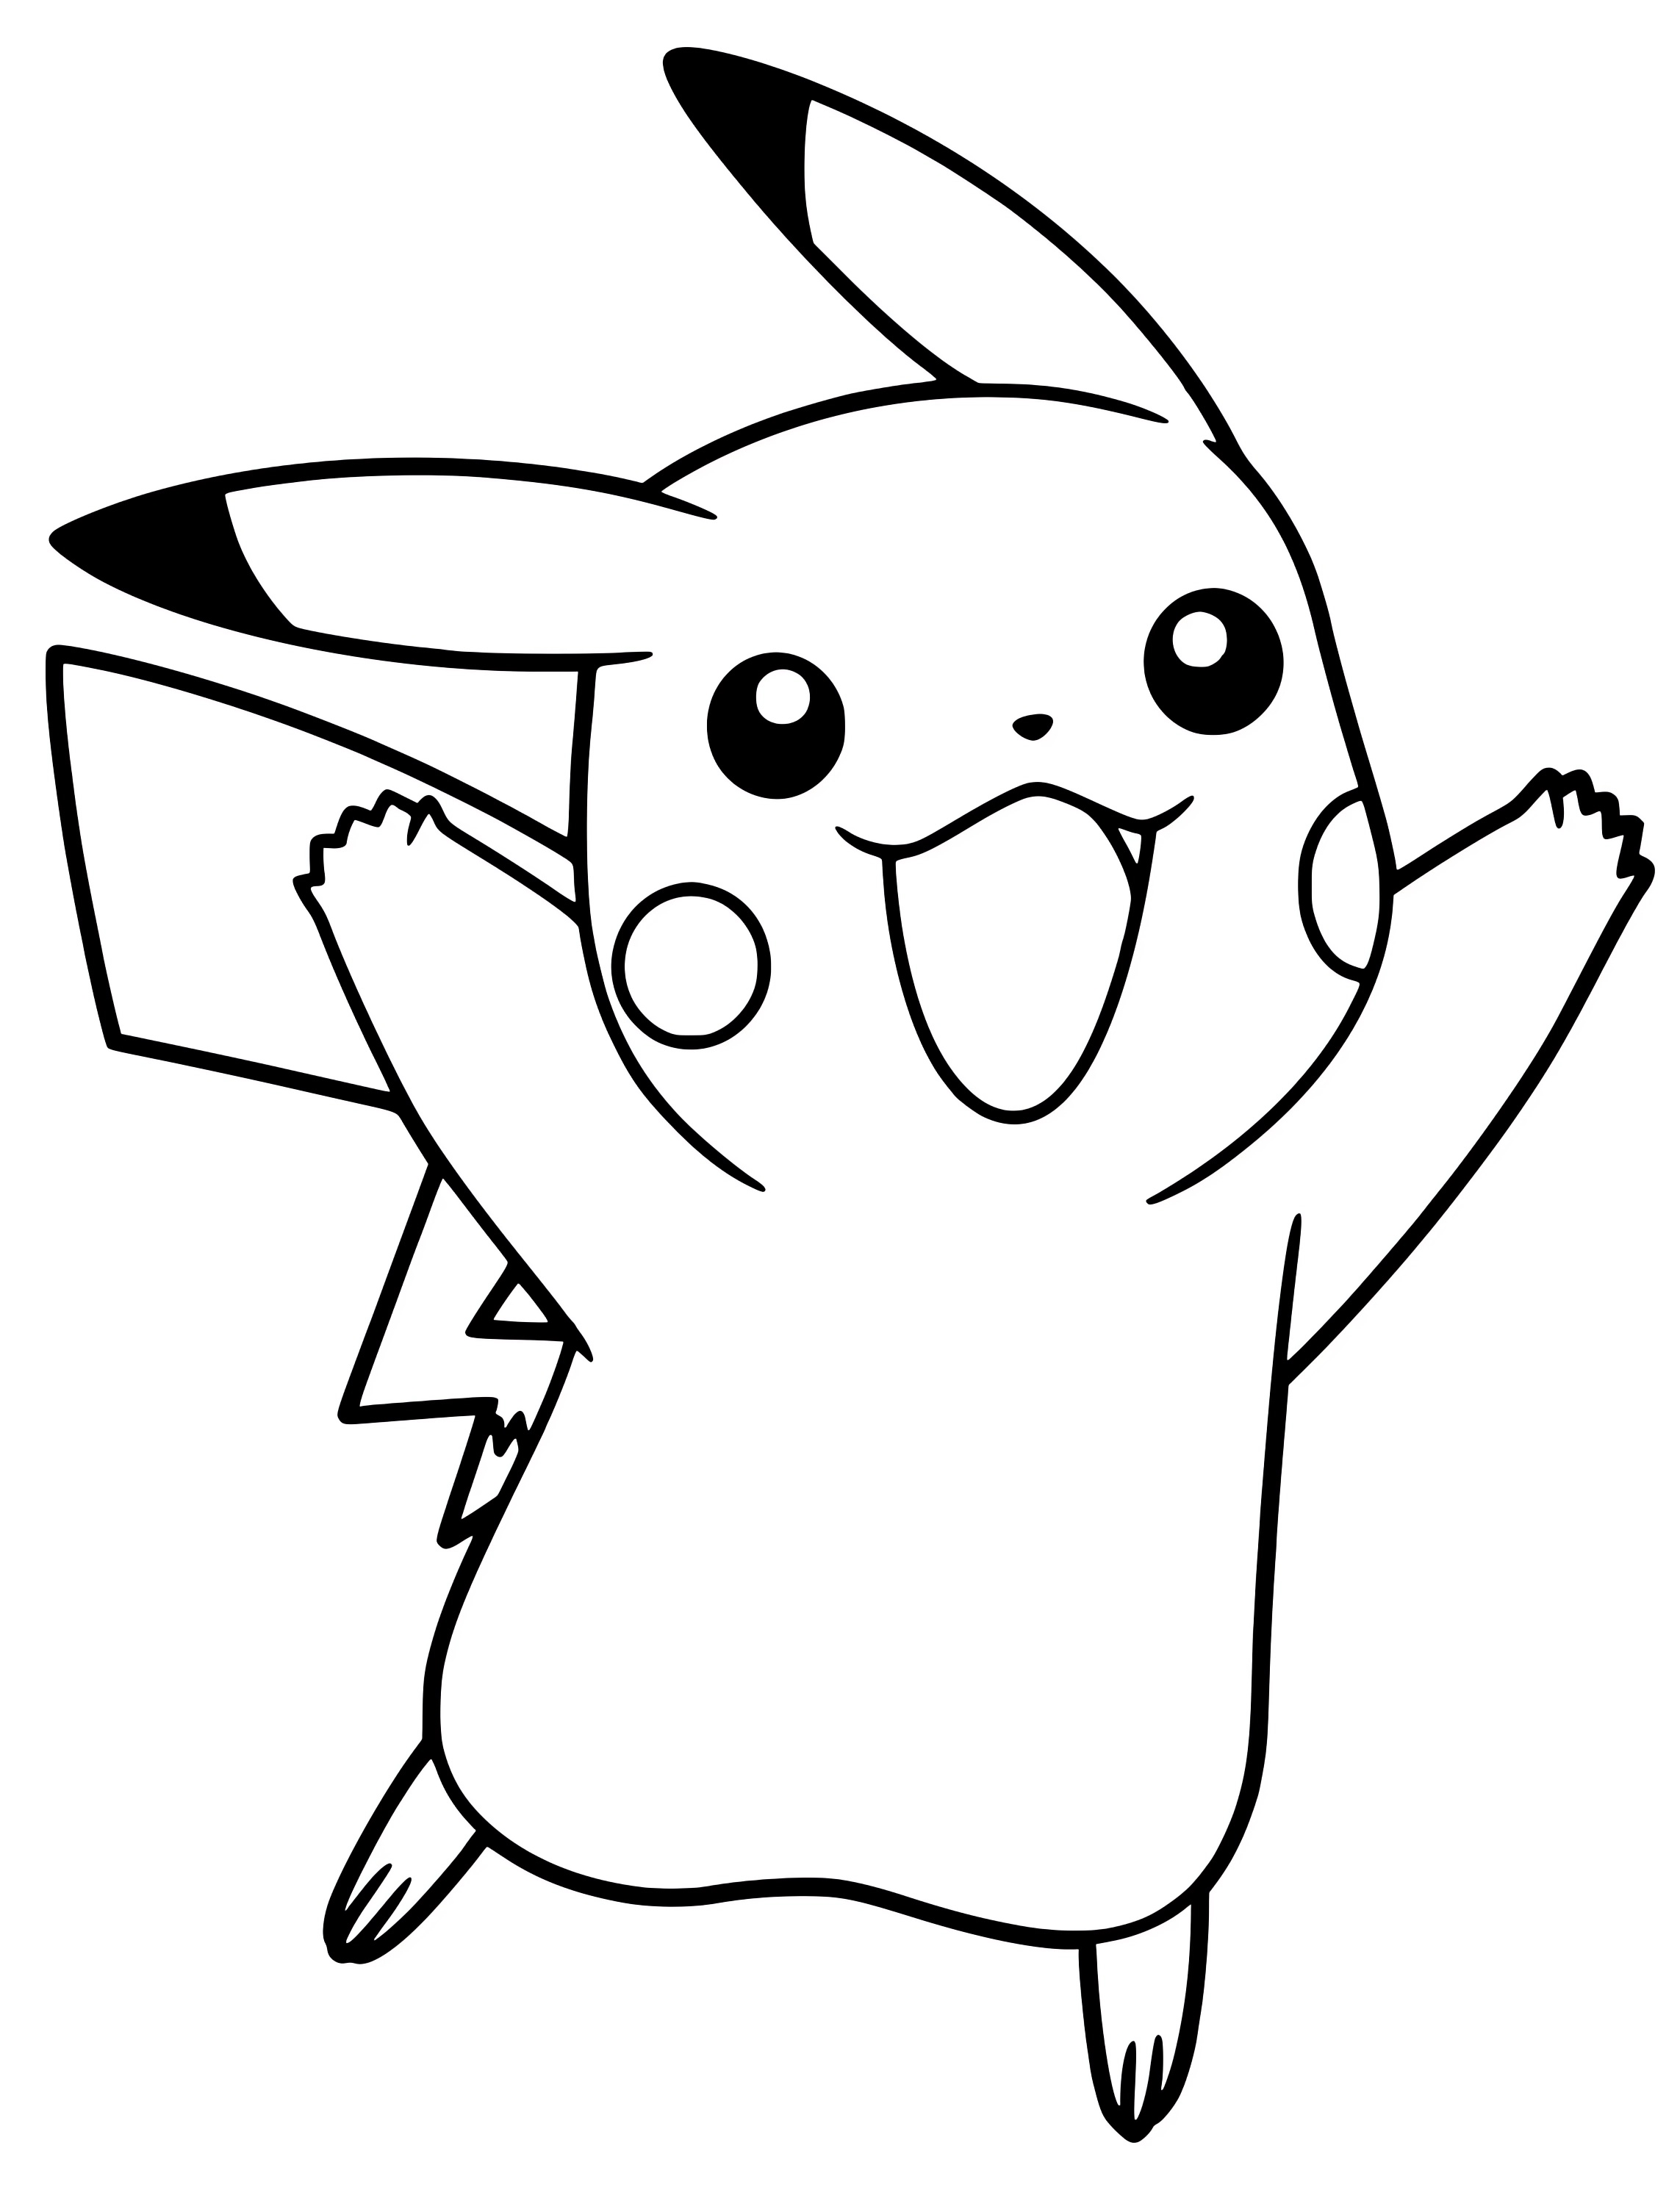 Disegno di Pikachu 12 di Pokemon da stampare e colorare